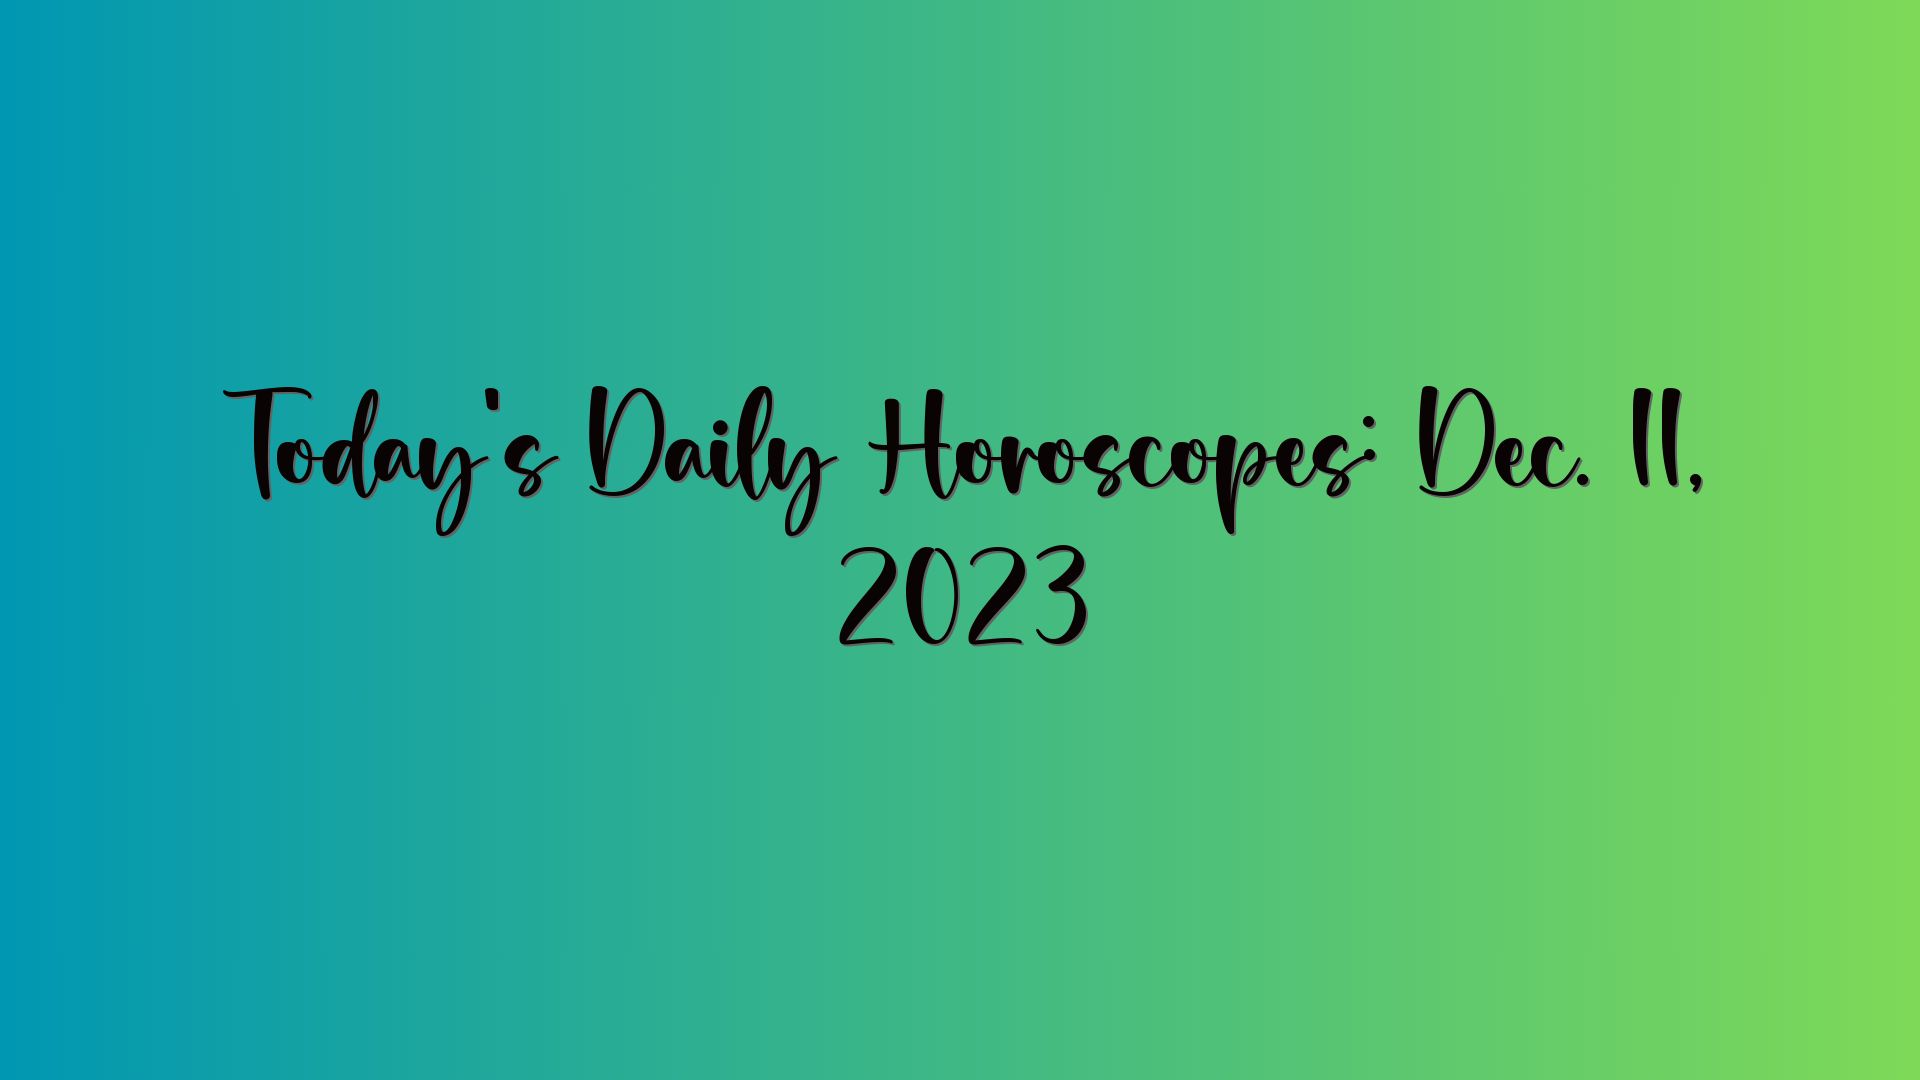 Today’s Daily Horoscopes: Dec. 11, 2023